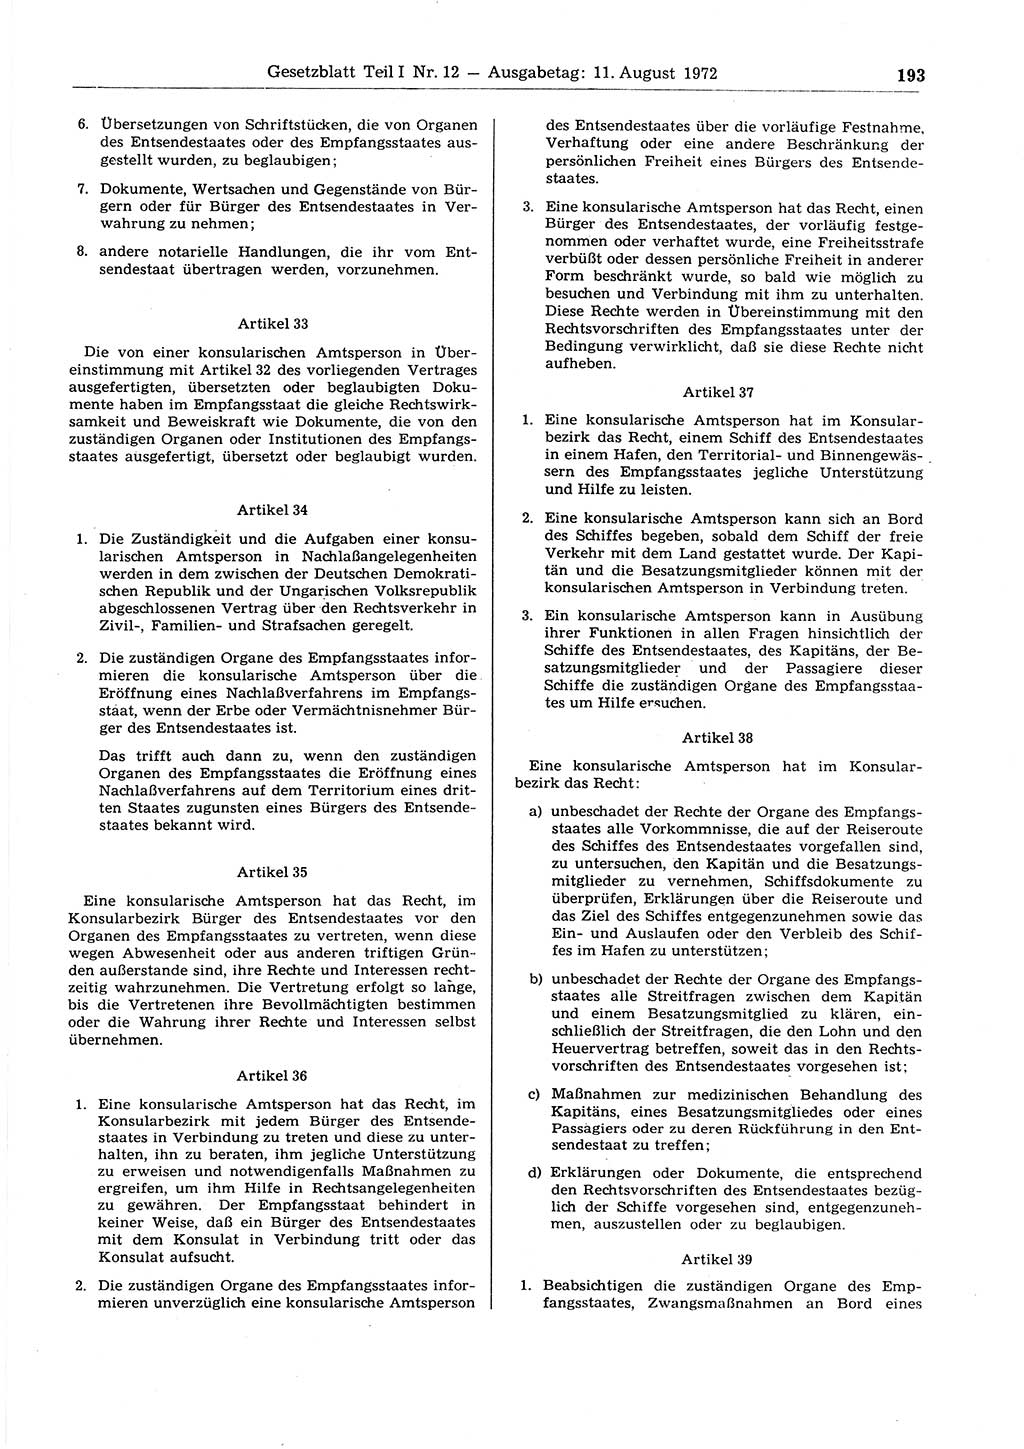 Gesetzblatt (GBl.) der Deutschen Demokratischen Republik (DDR) Teil Ⅰ 1972, Seite 193 (GBl. DDR Ⅰ 1972, S. 193)